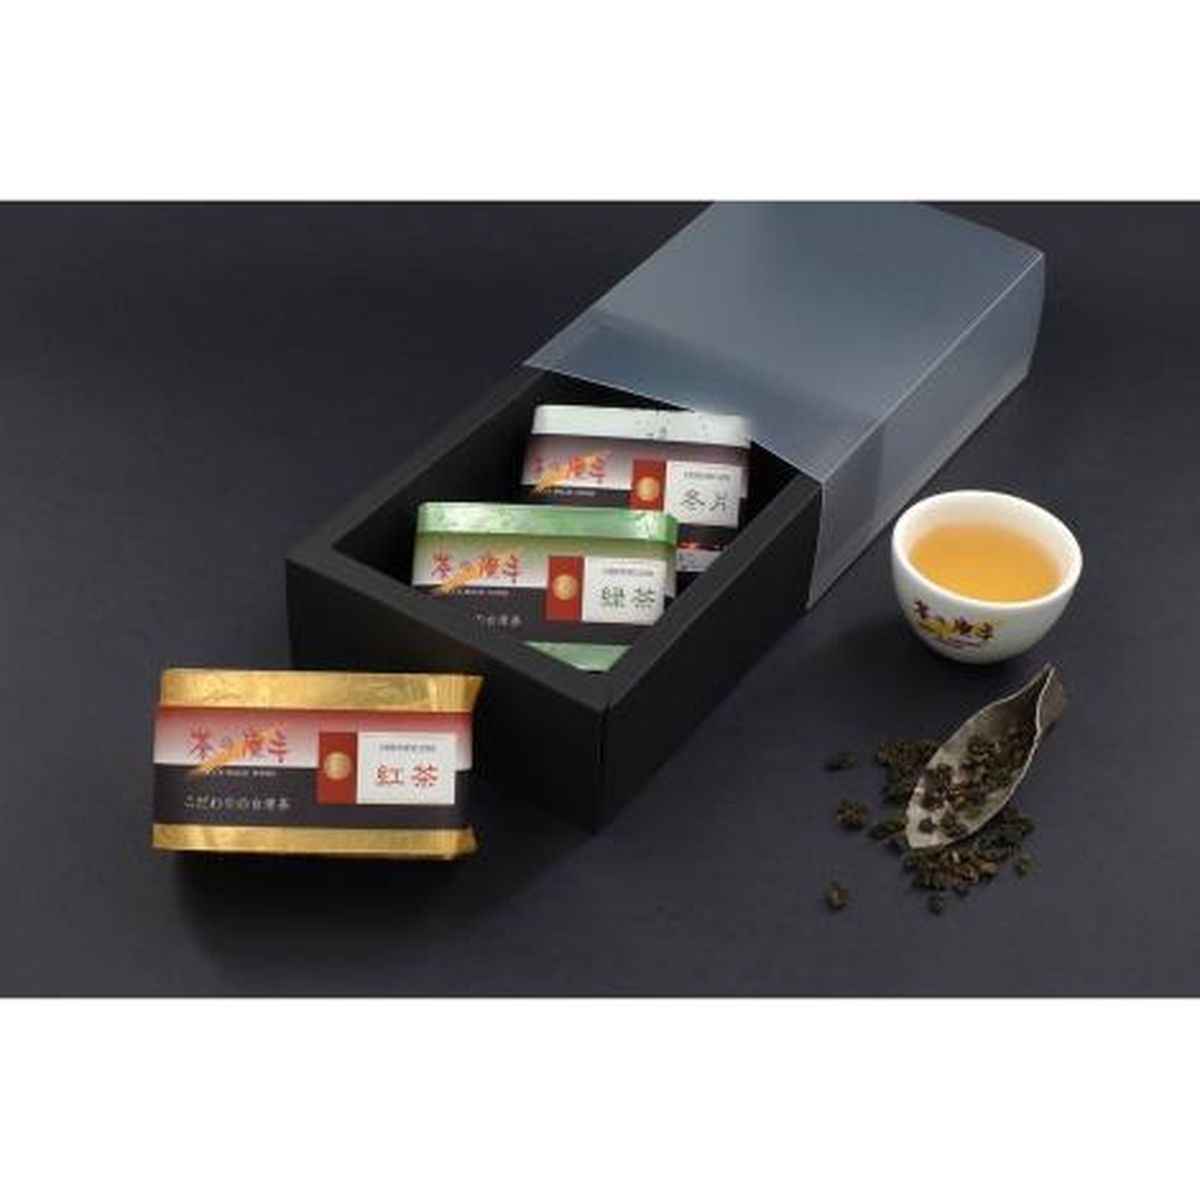 【送料無料】桃陽エコレア株式会社 3種茶葉セット(冬片75g 緑茶75g 紅茶75g)